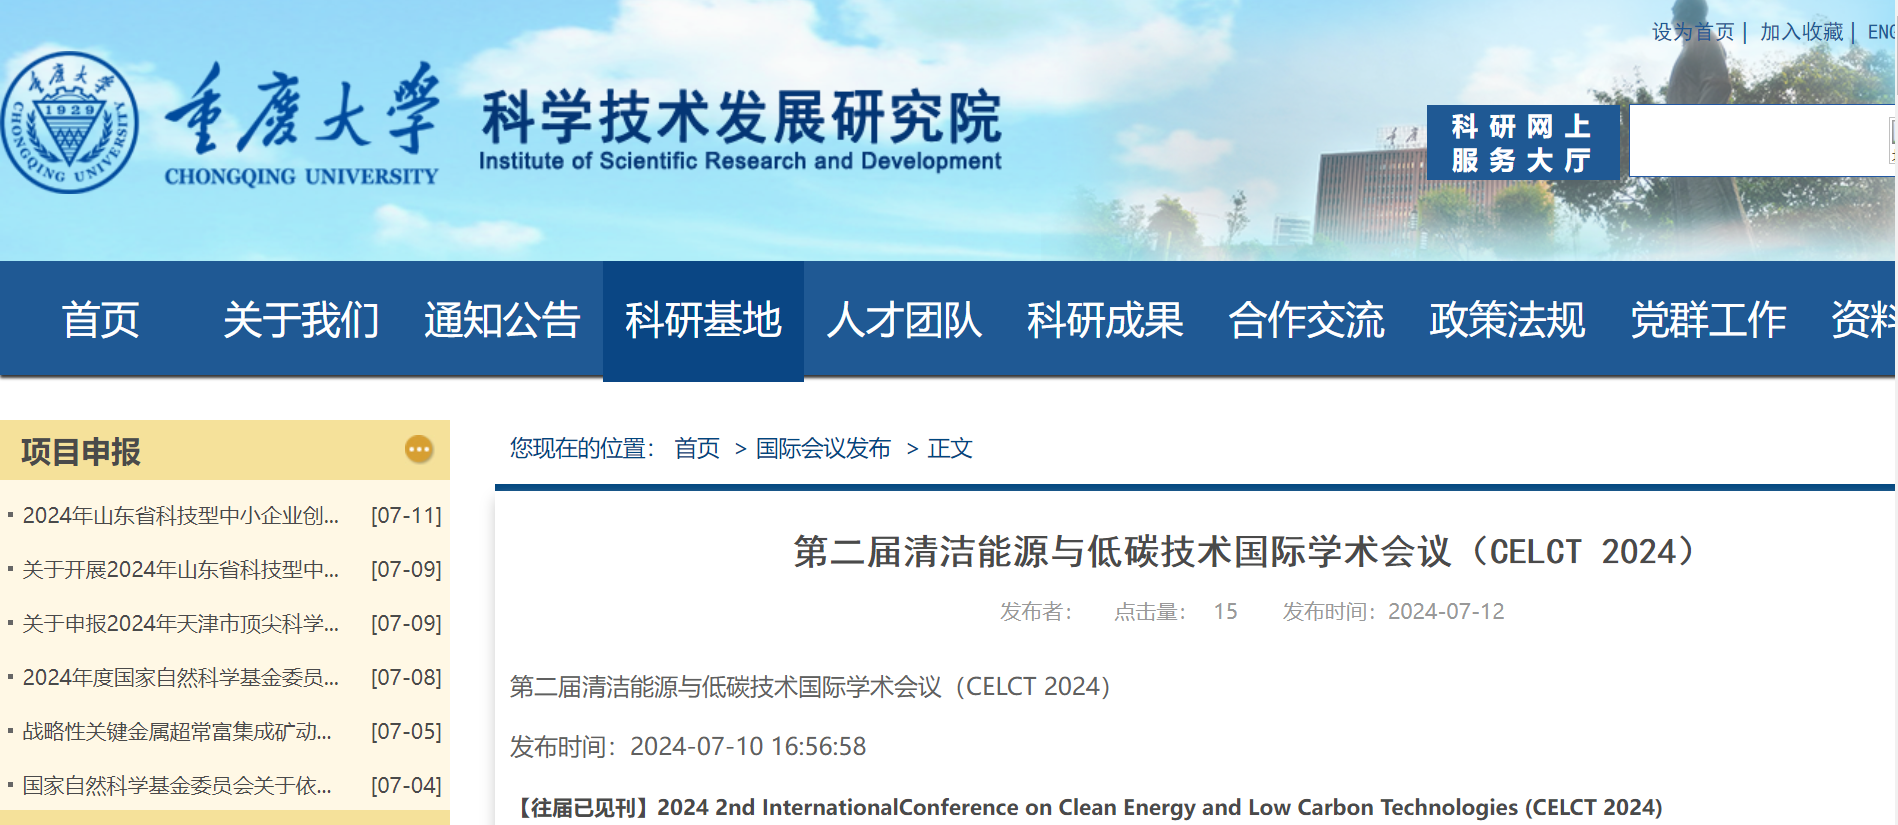 CELCT上线重庆大学截图.png